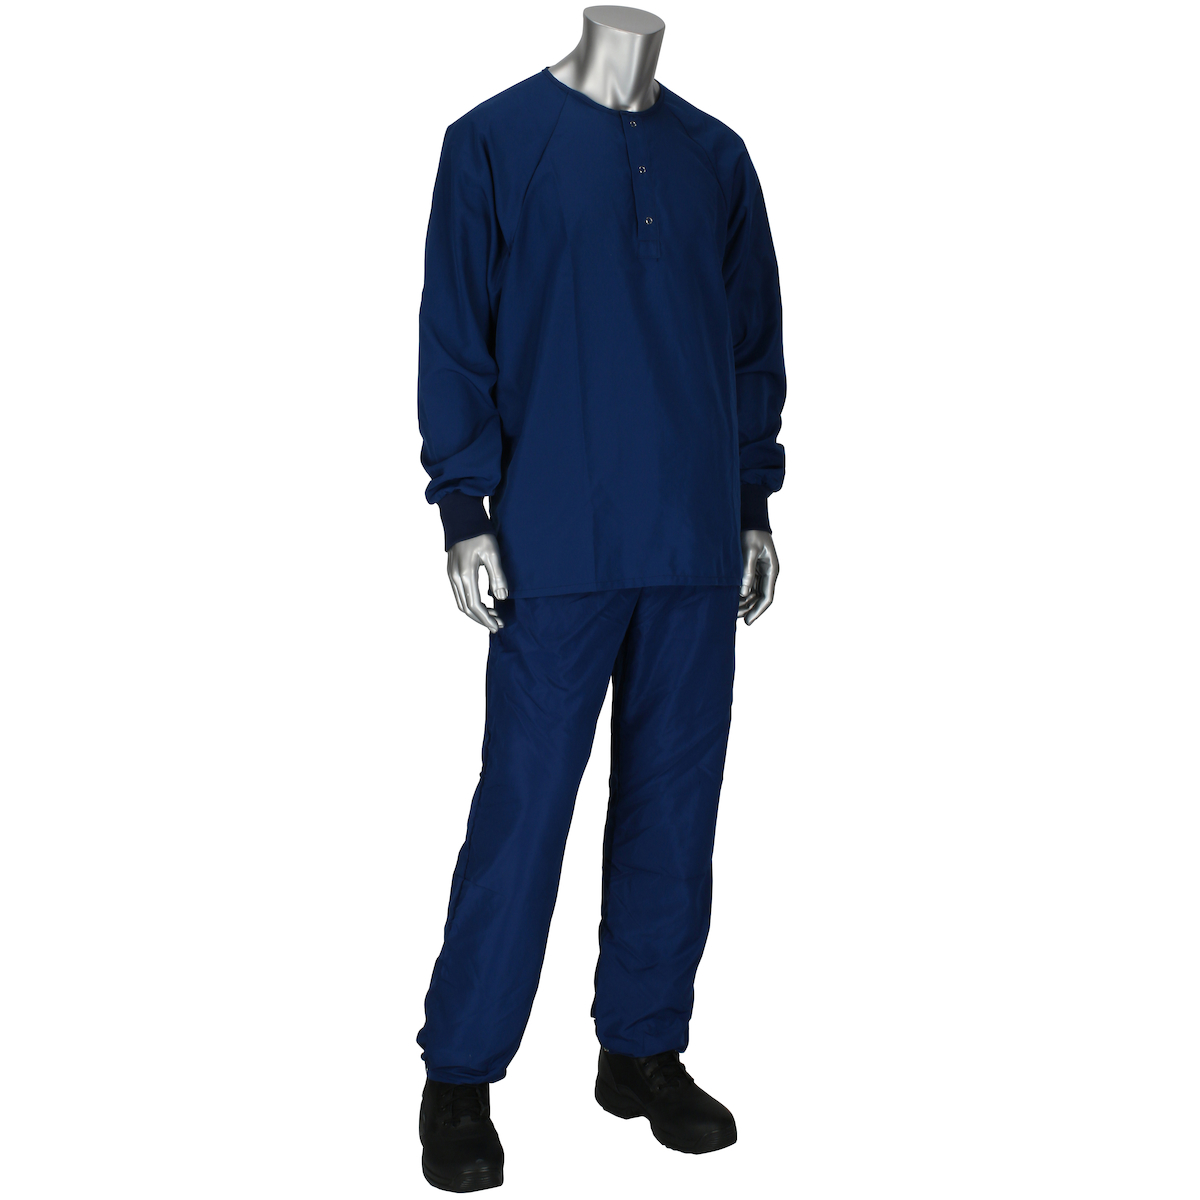 HSCBM1P/HSCTM3-49NV PIP® Uniform Technology™ Microdenier Sitewear Tops & Bottoms (Navy)